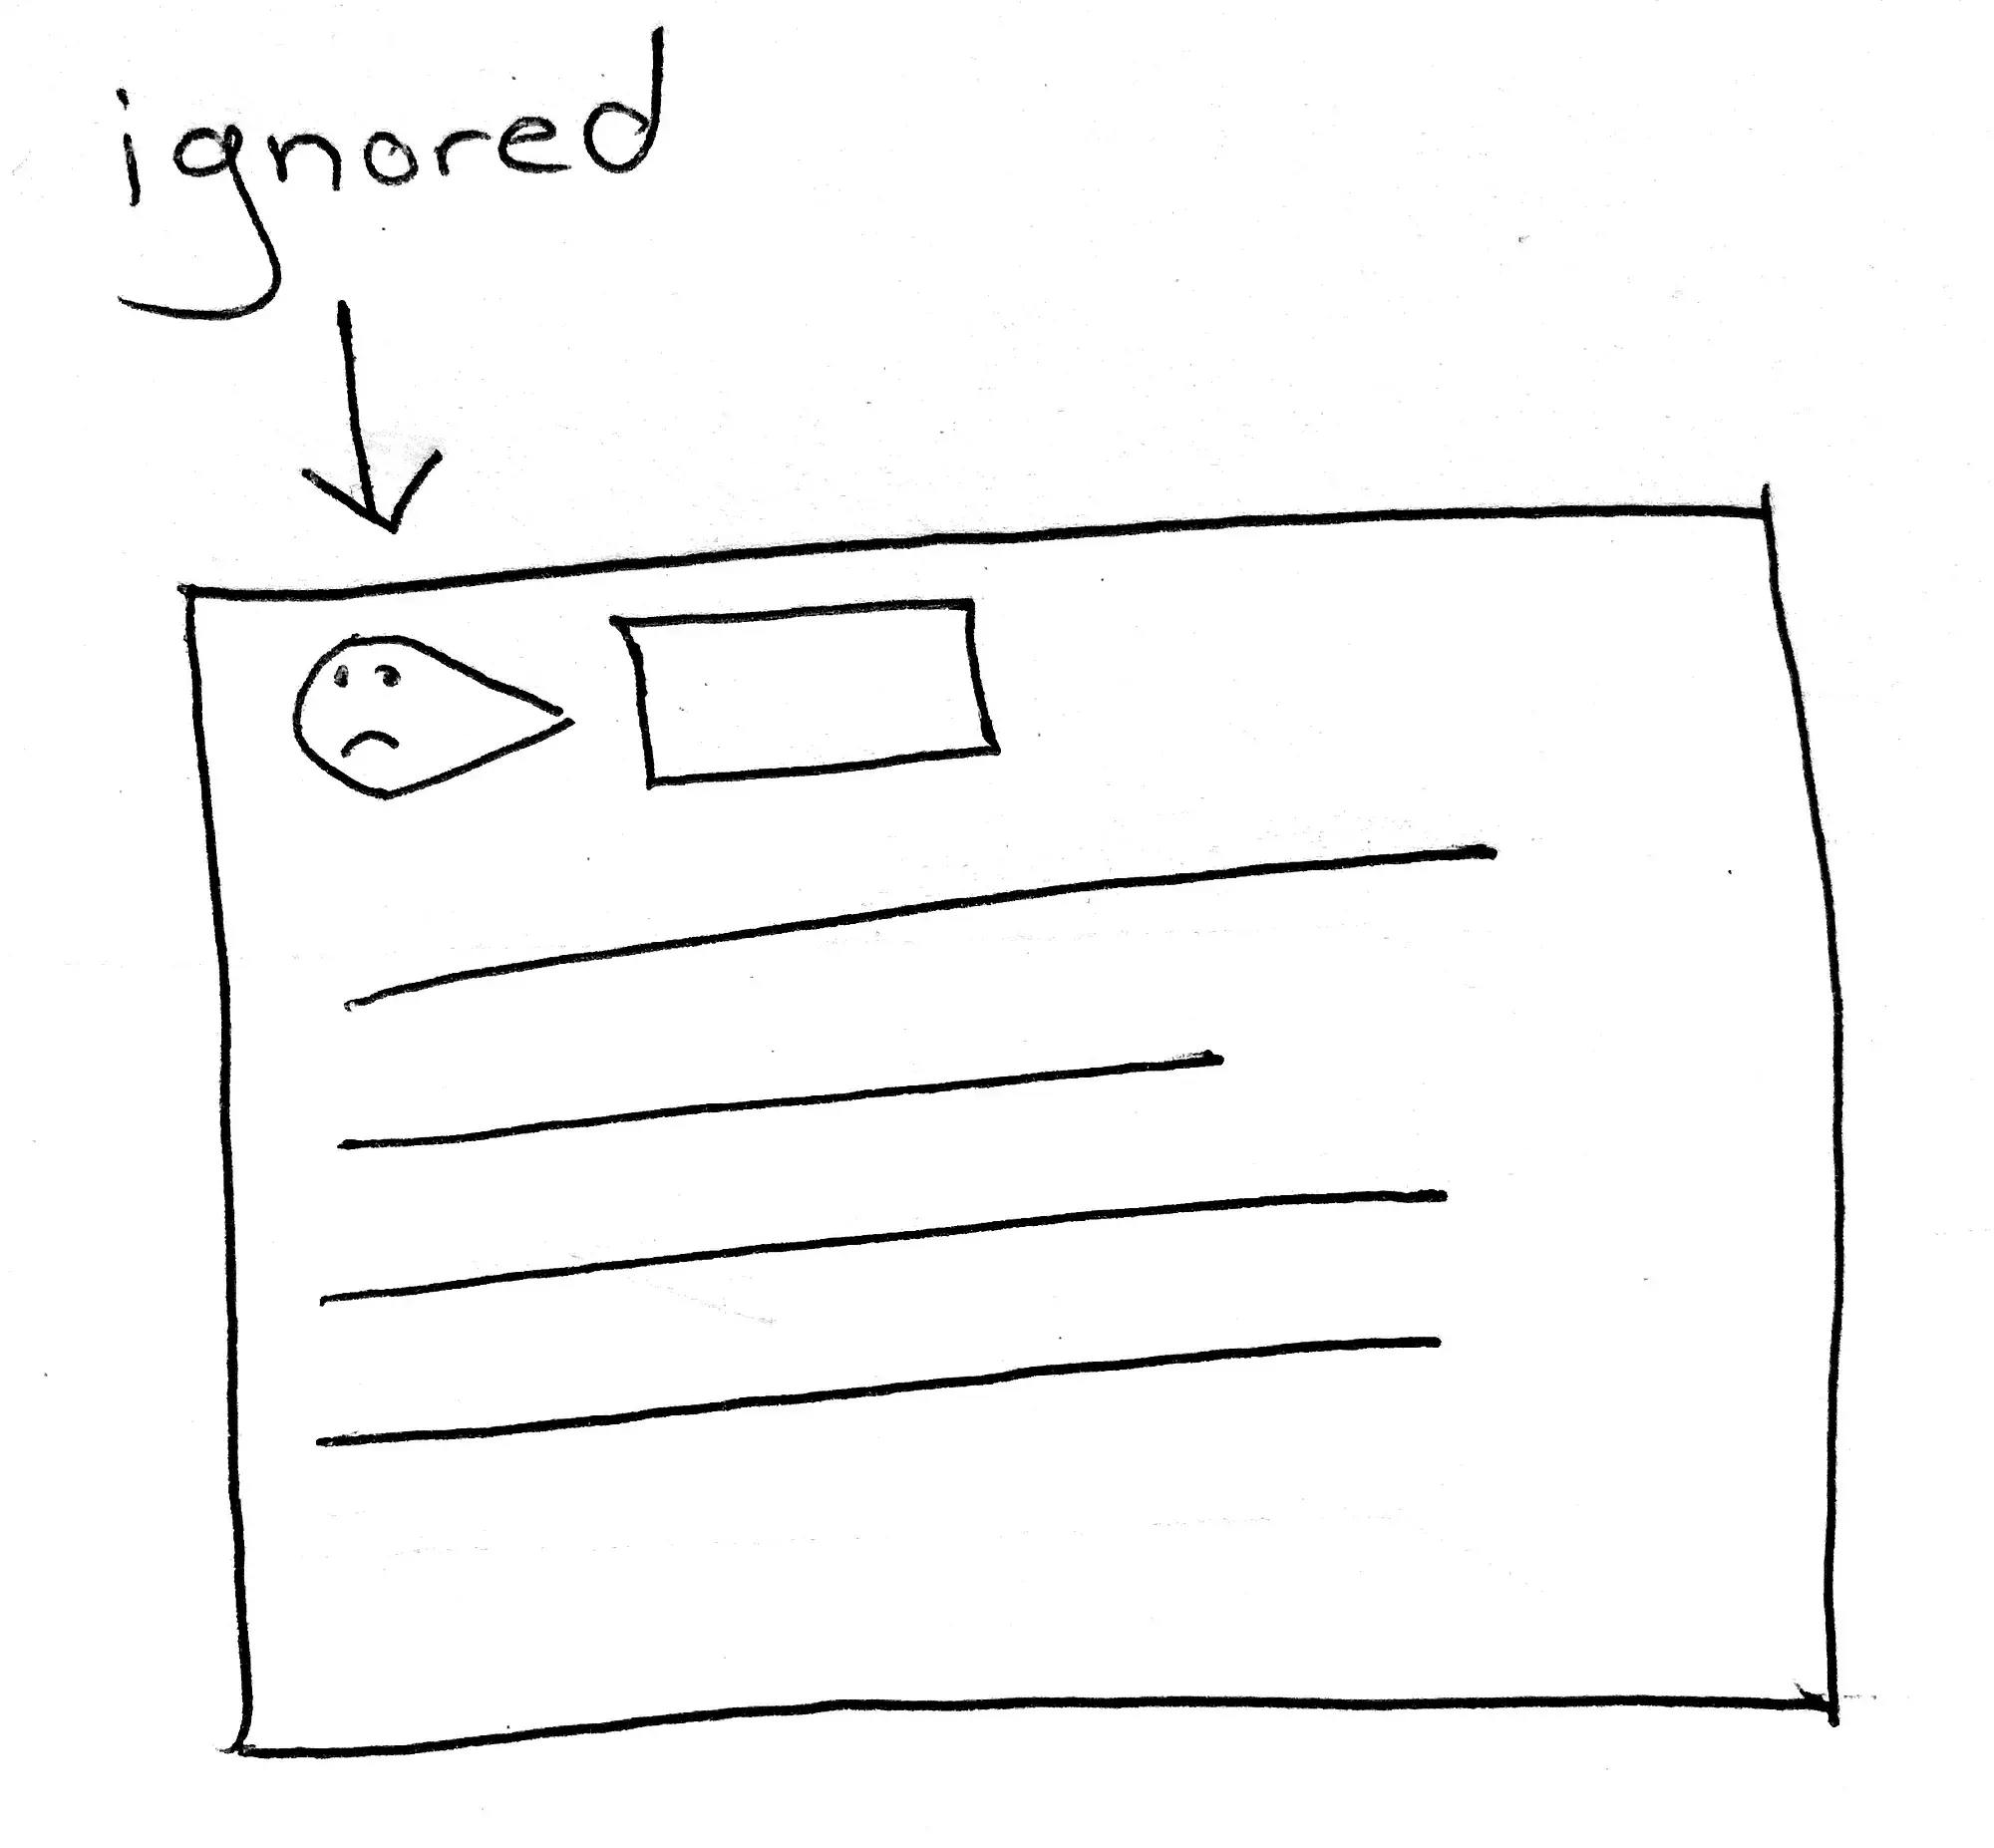 [IA Blog] Architecting - ignored (Image 1)